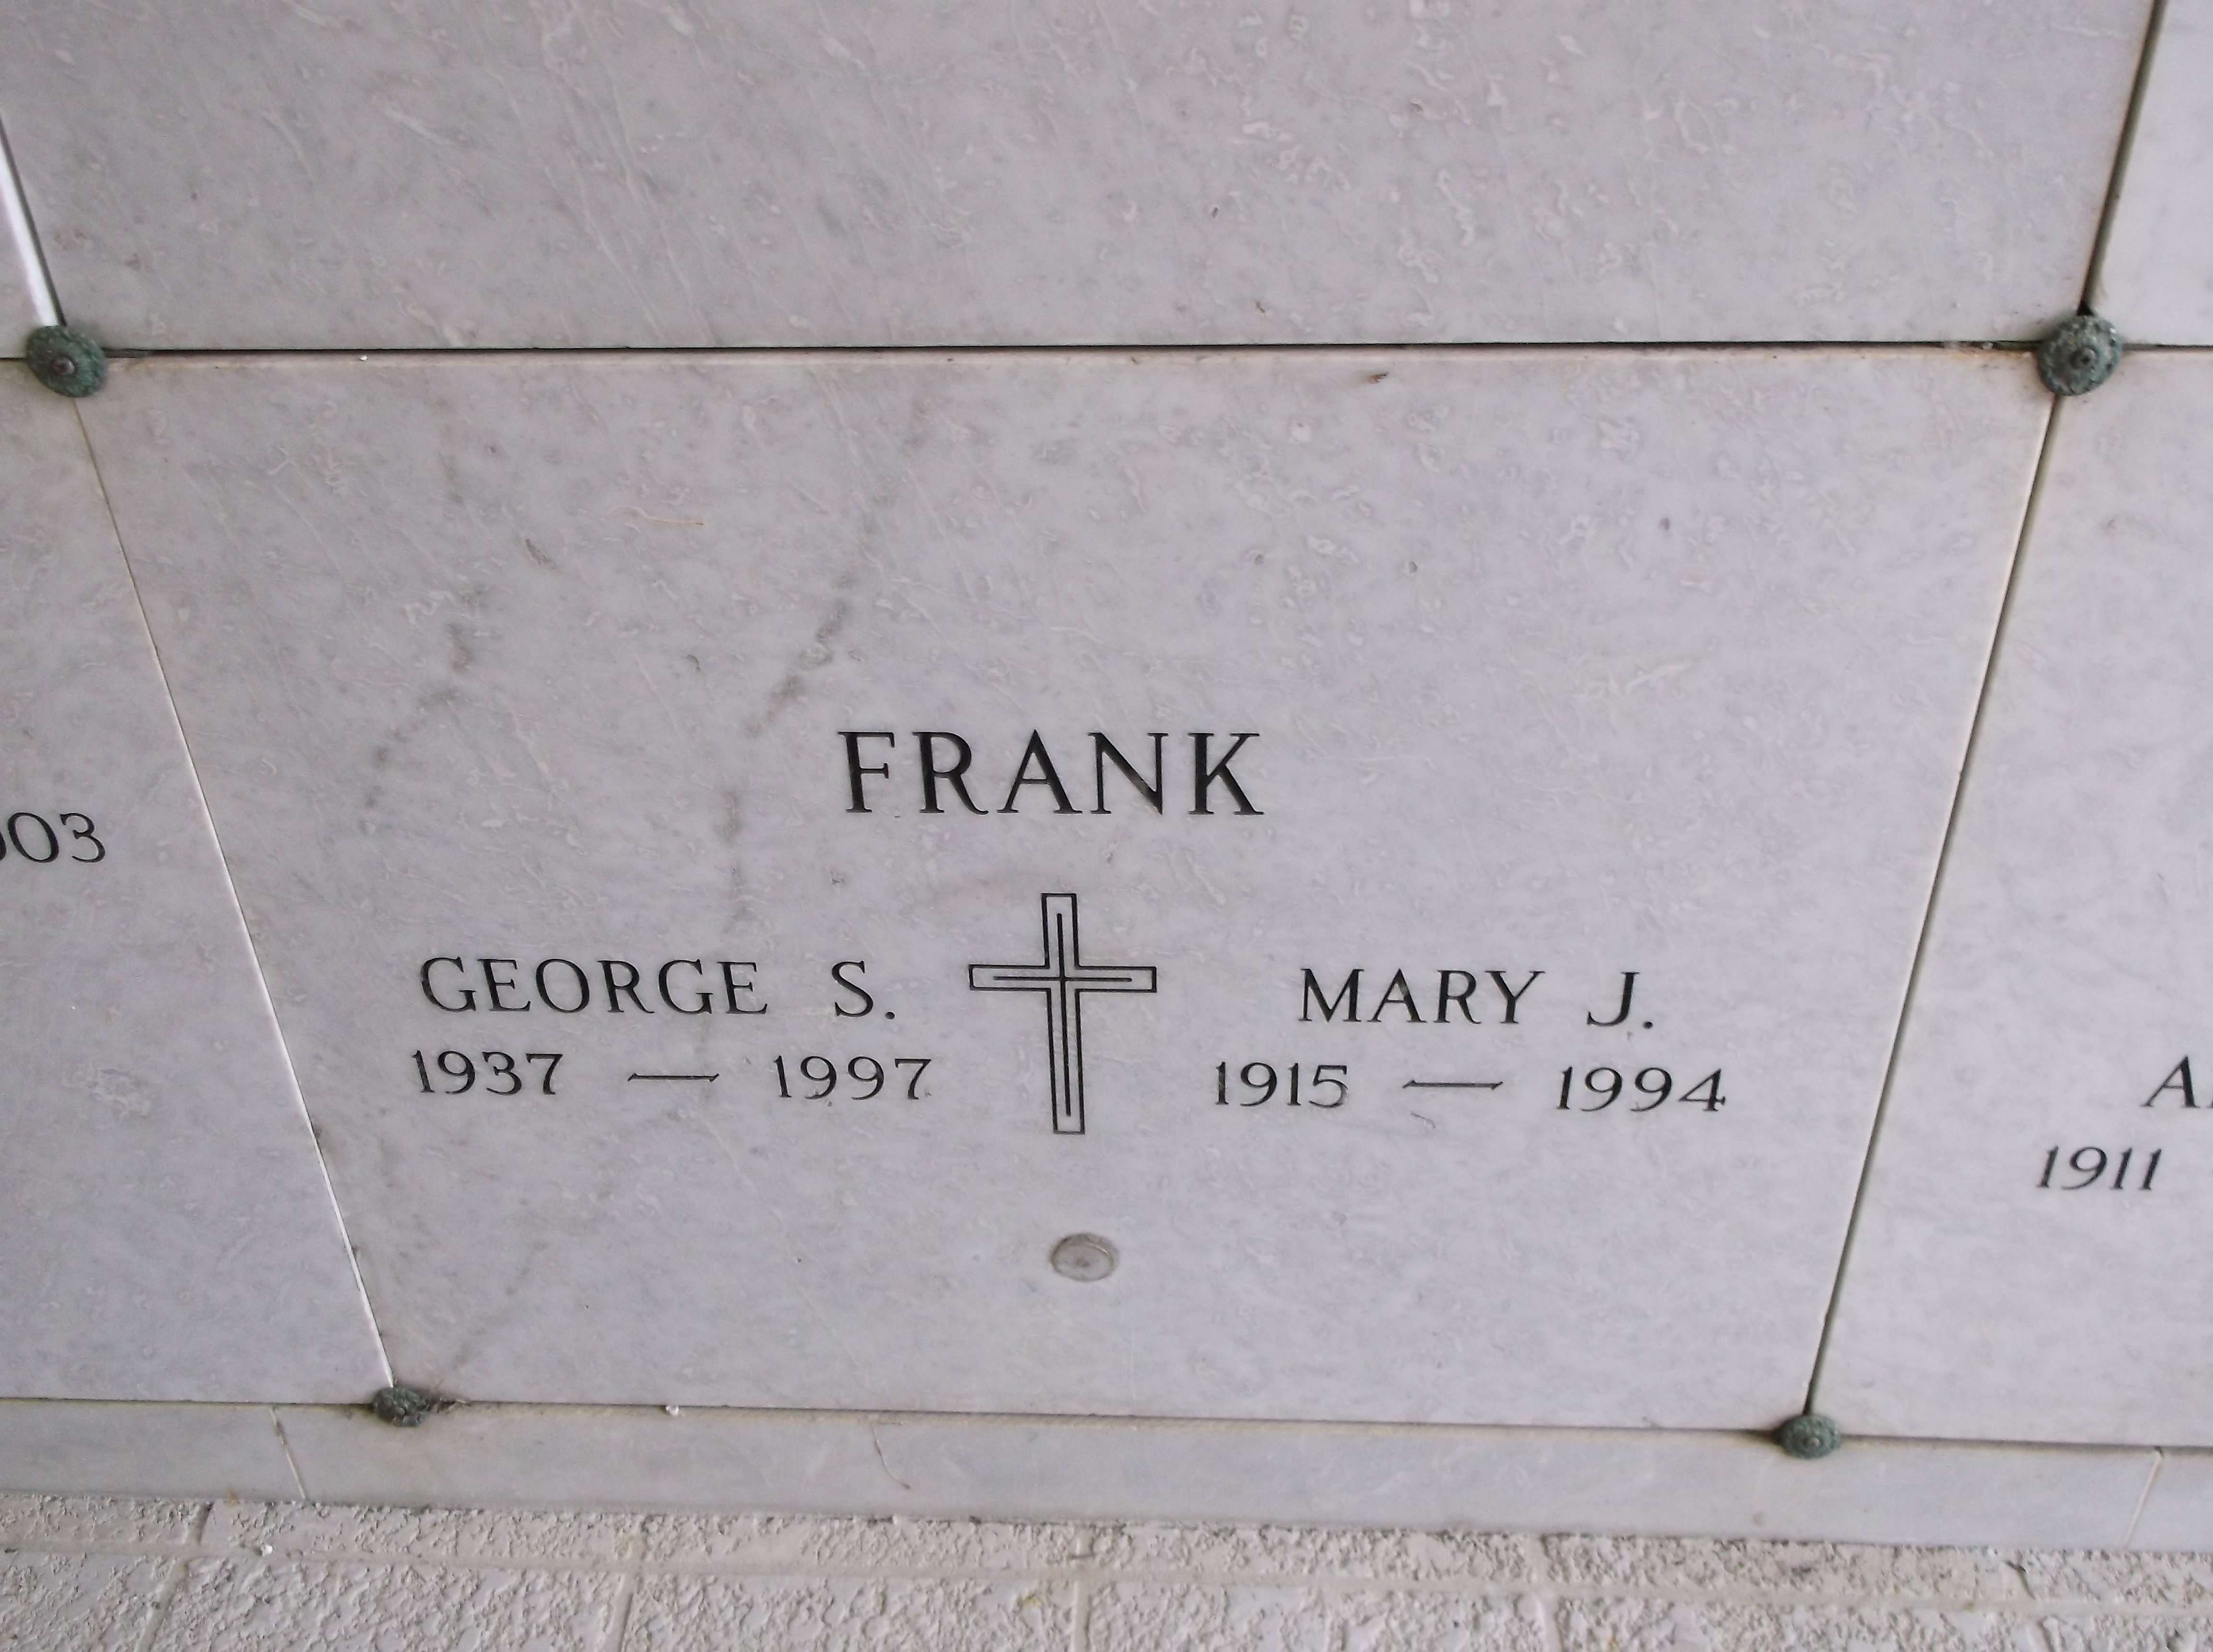 Mary J Frank